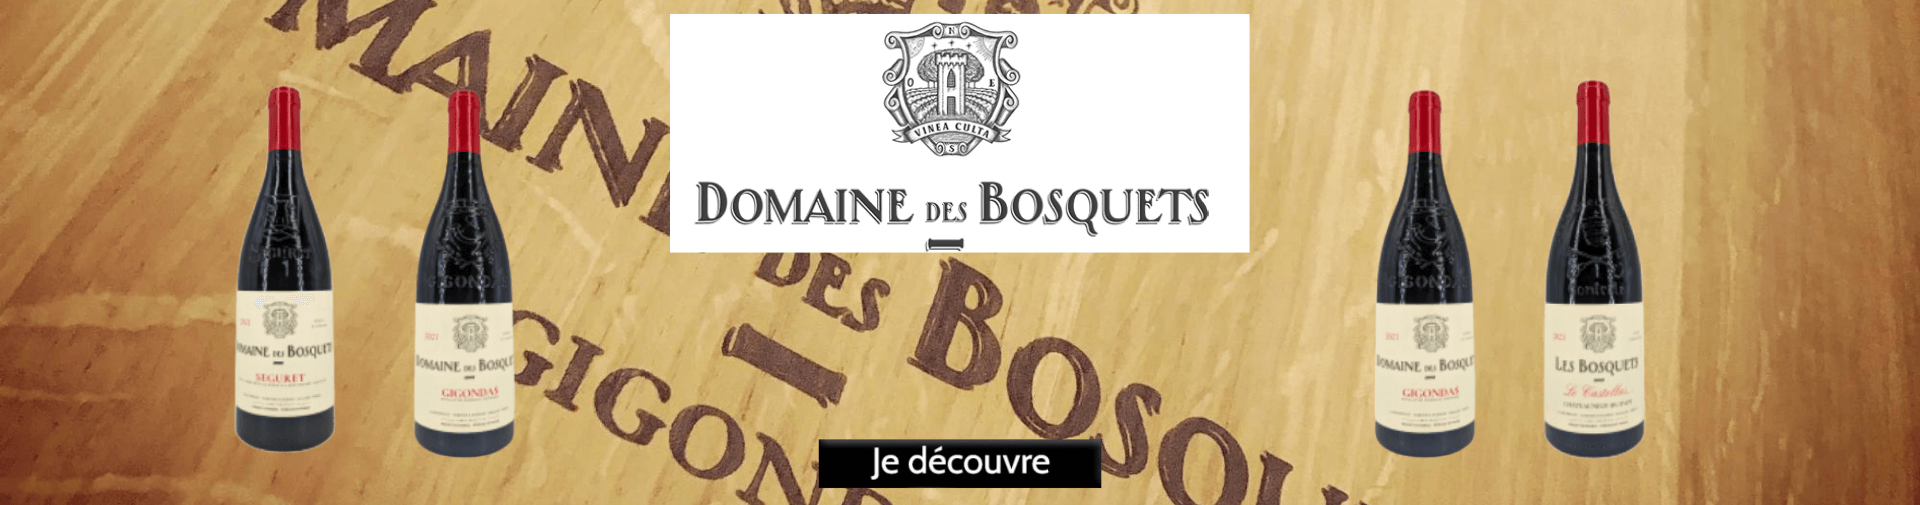 Domaine des Bosquets